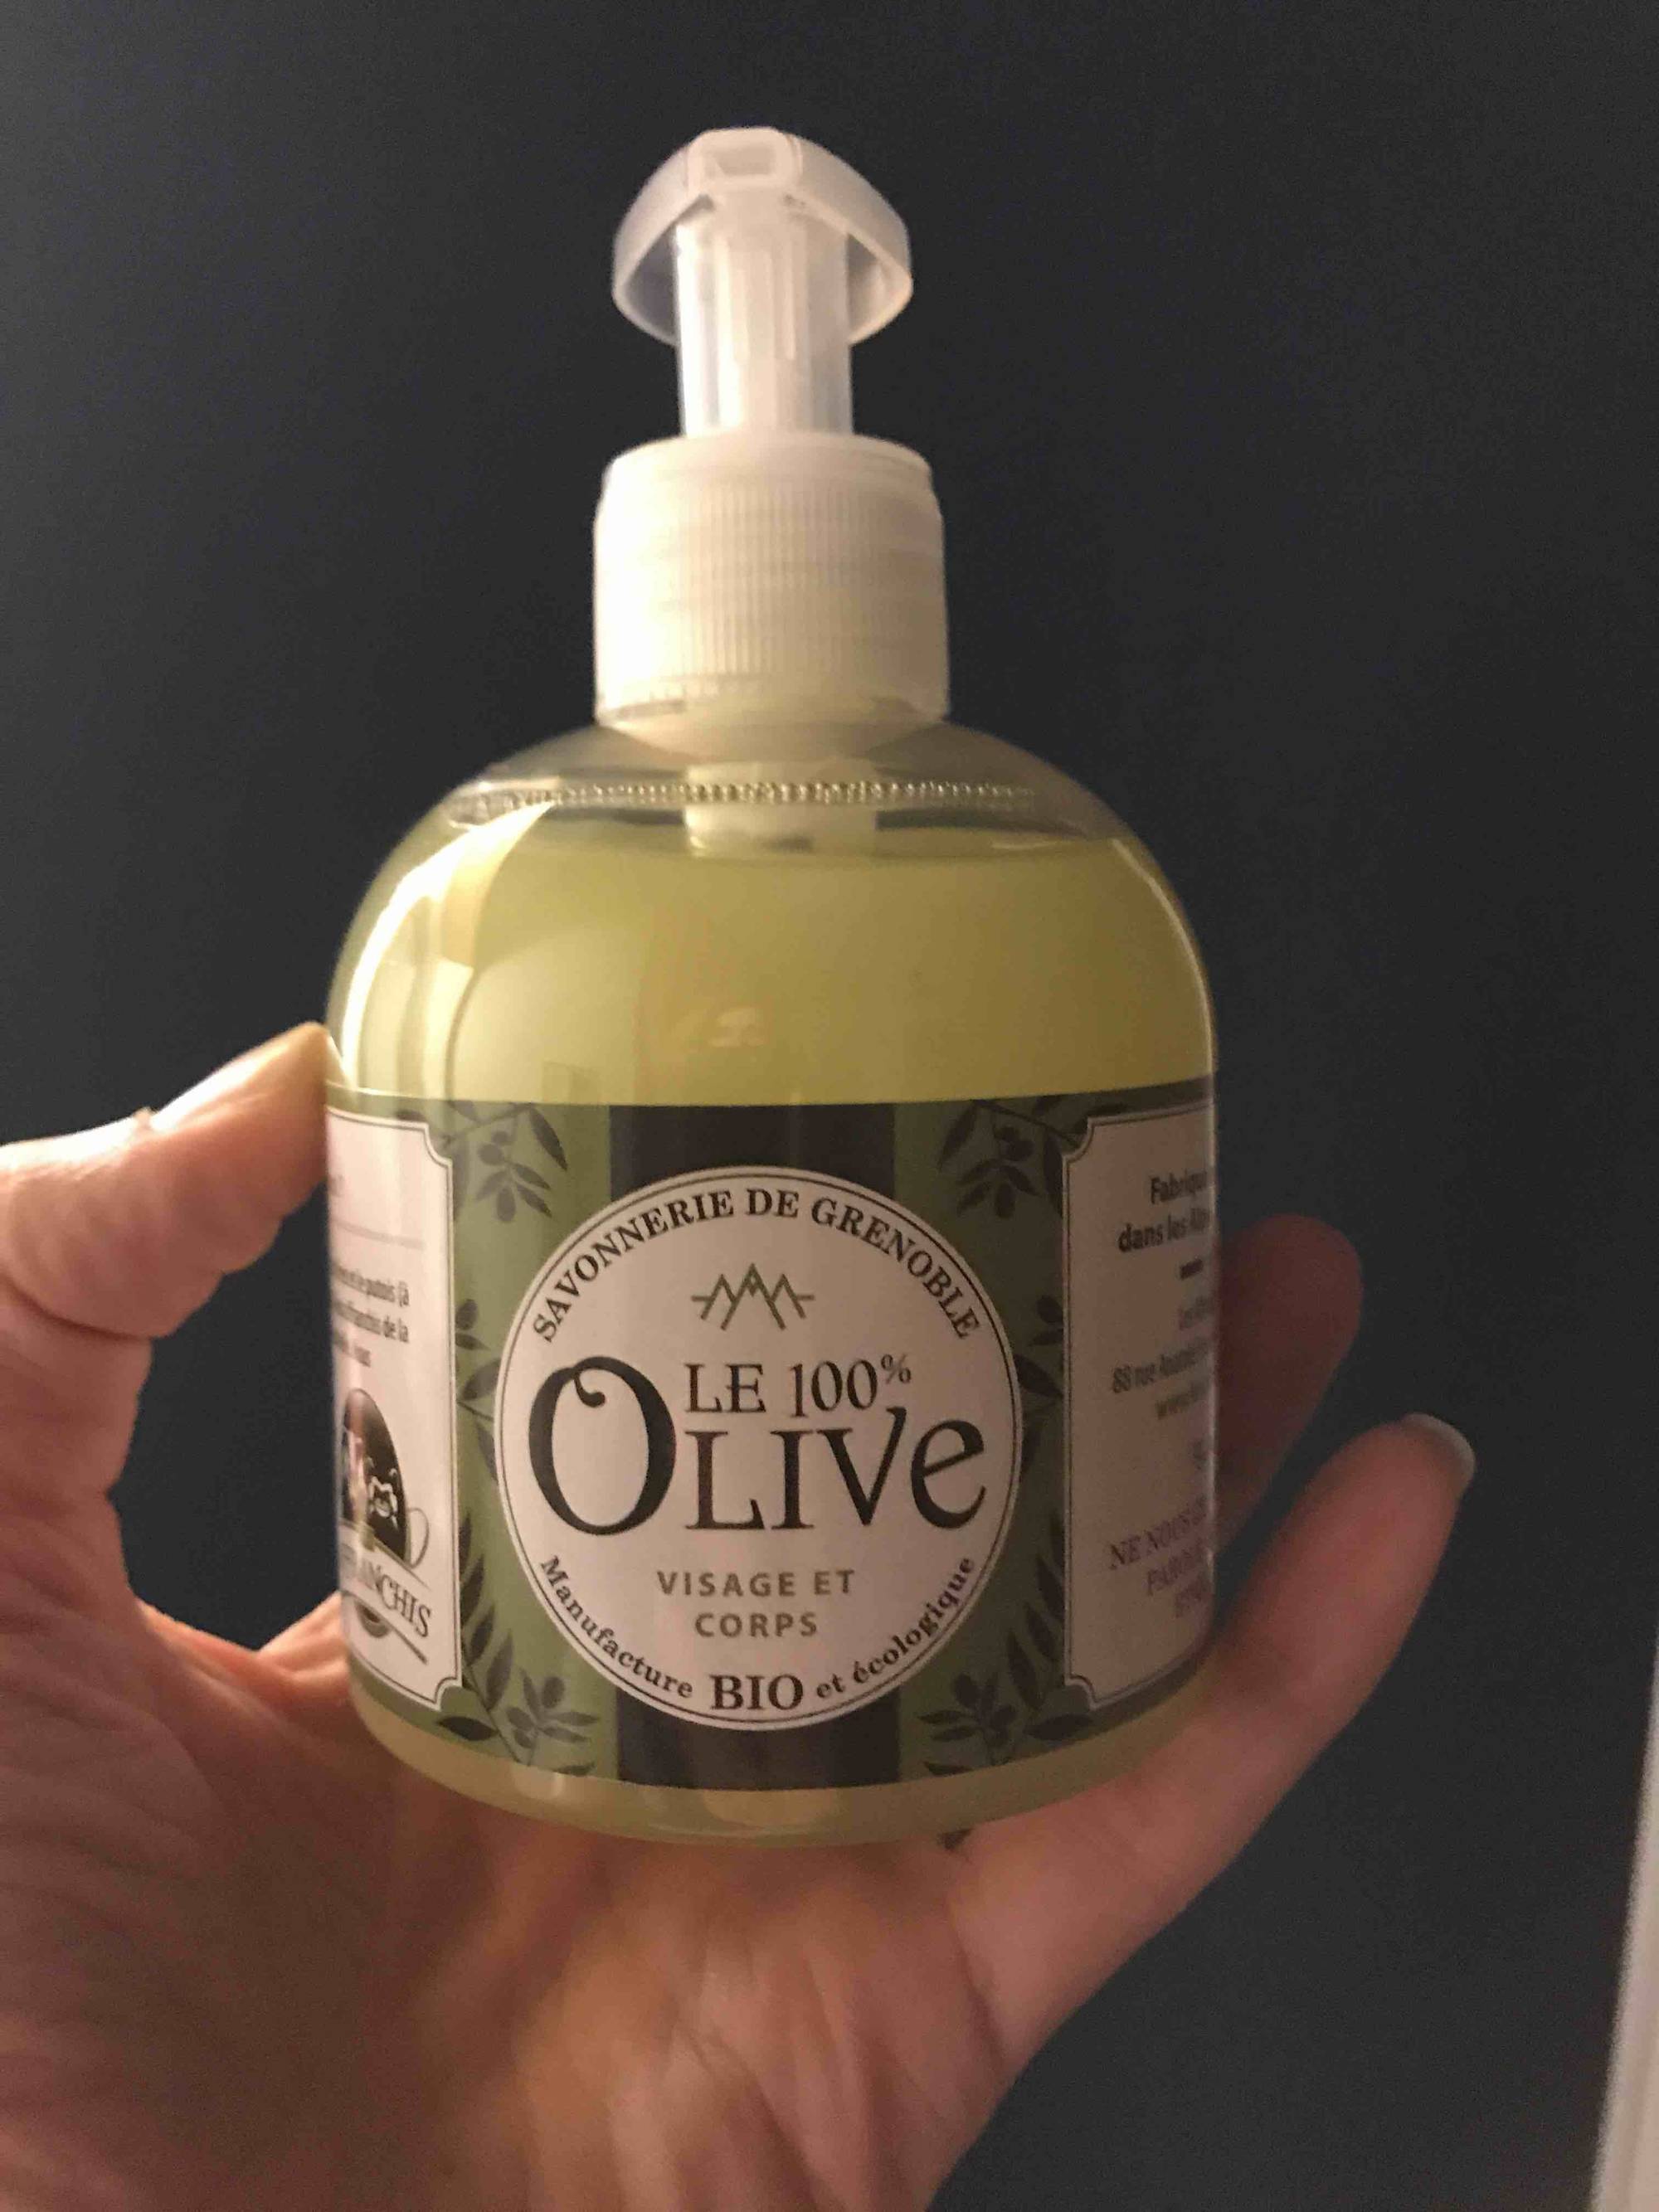 SAVONNERIE DE GRENOBLE - Le 100% olive visage et corps